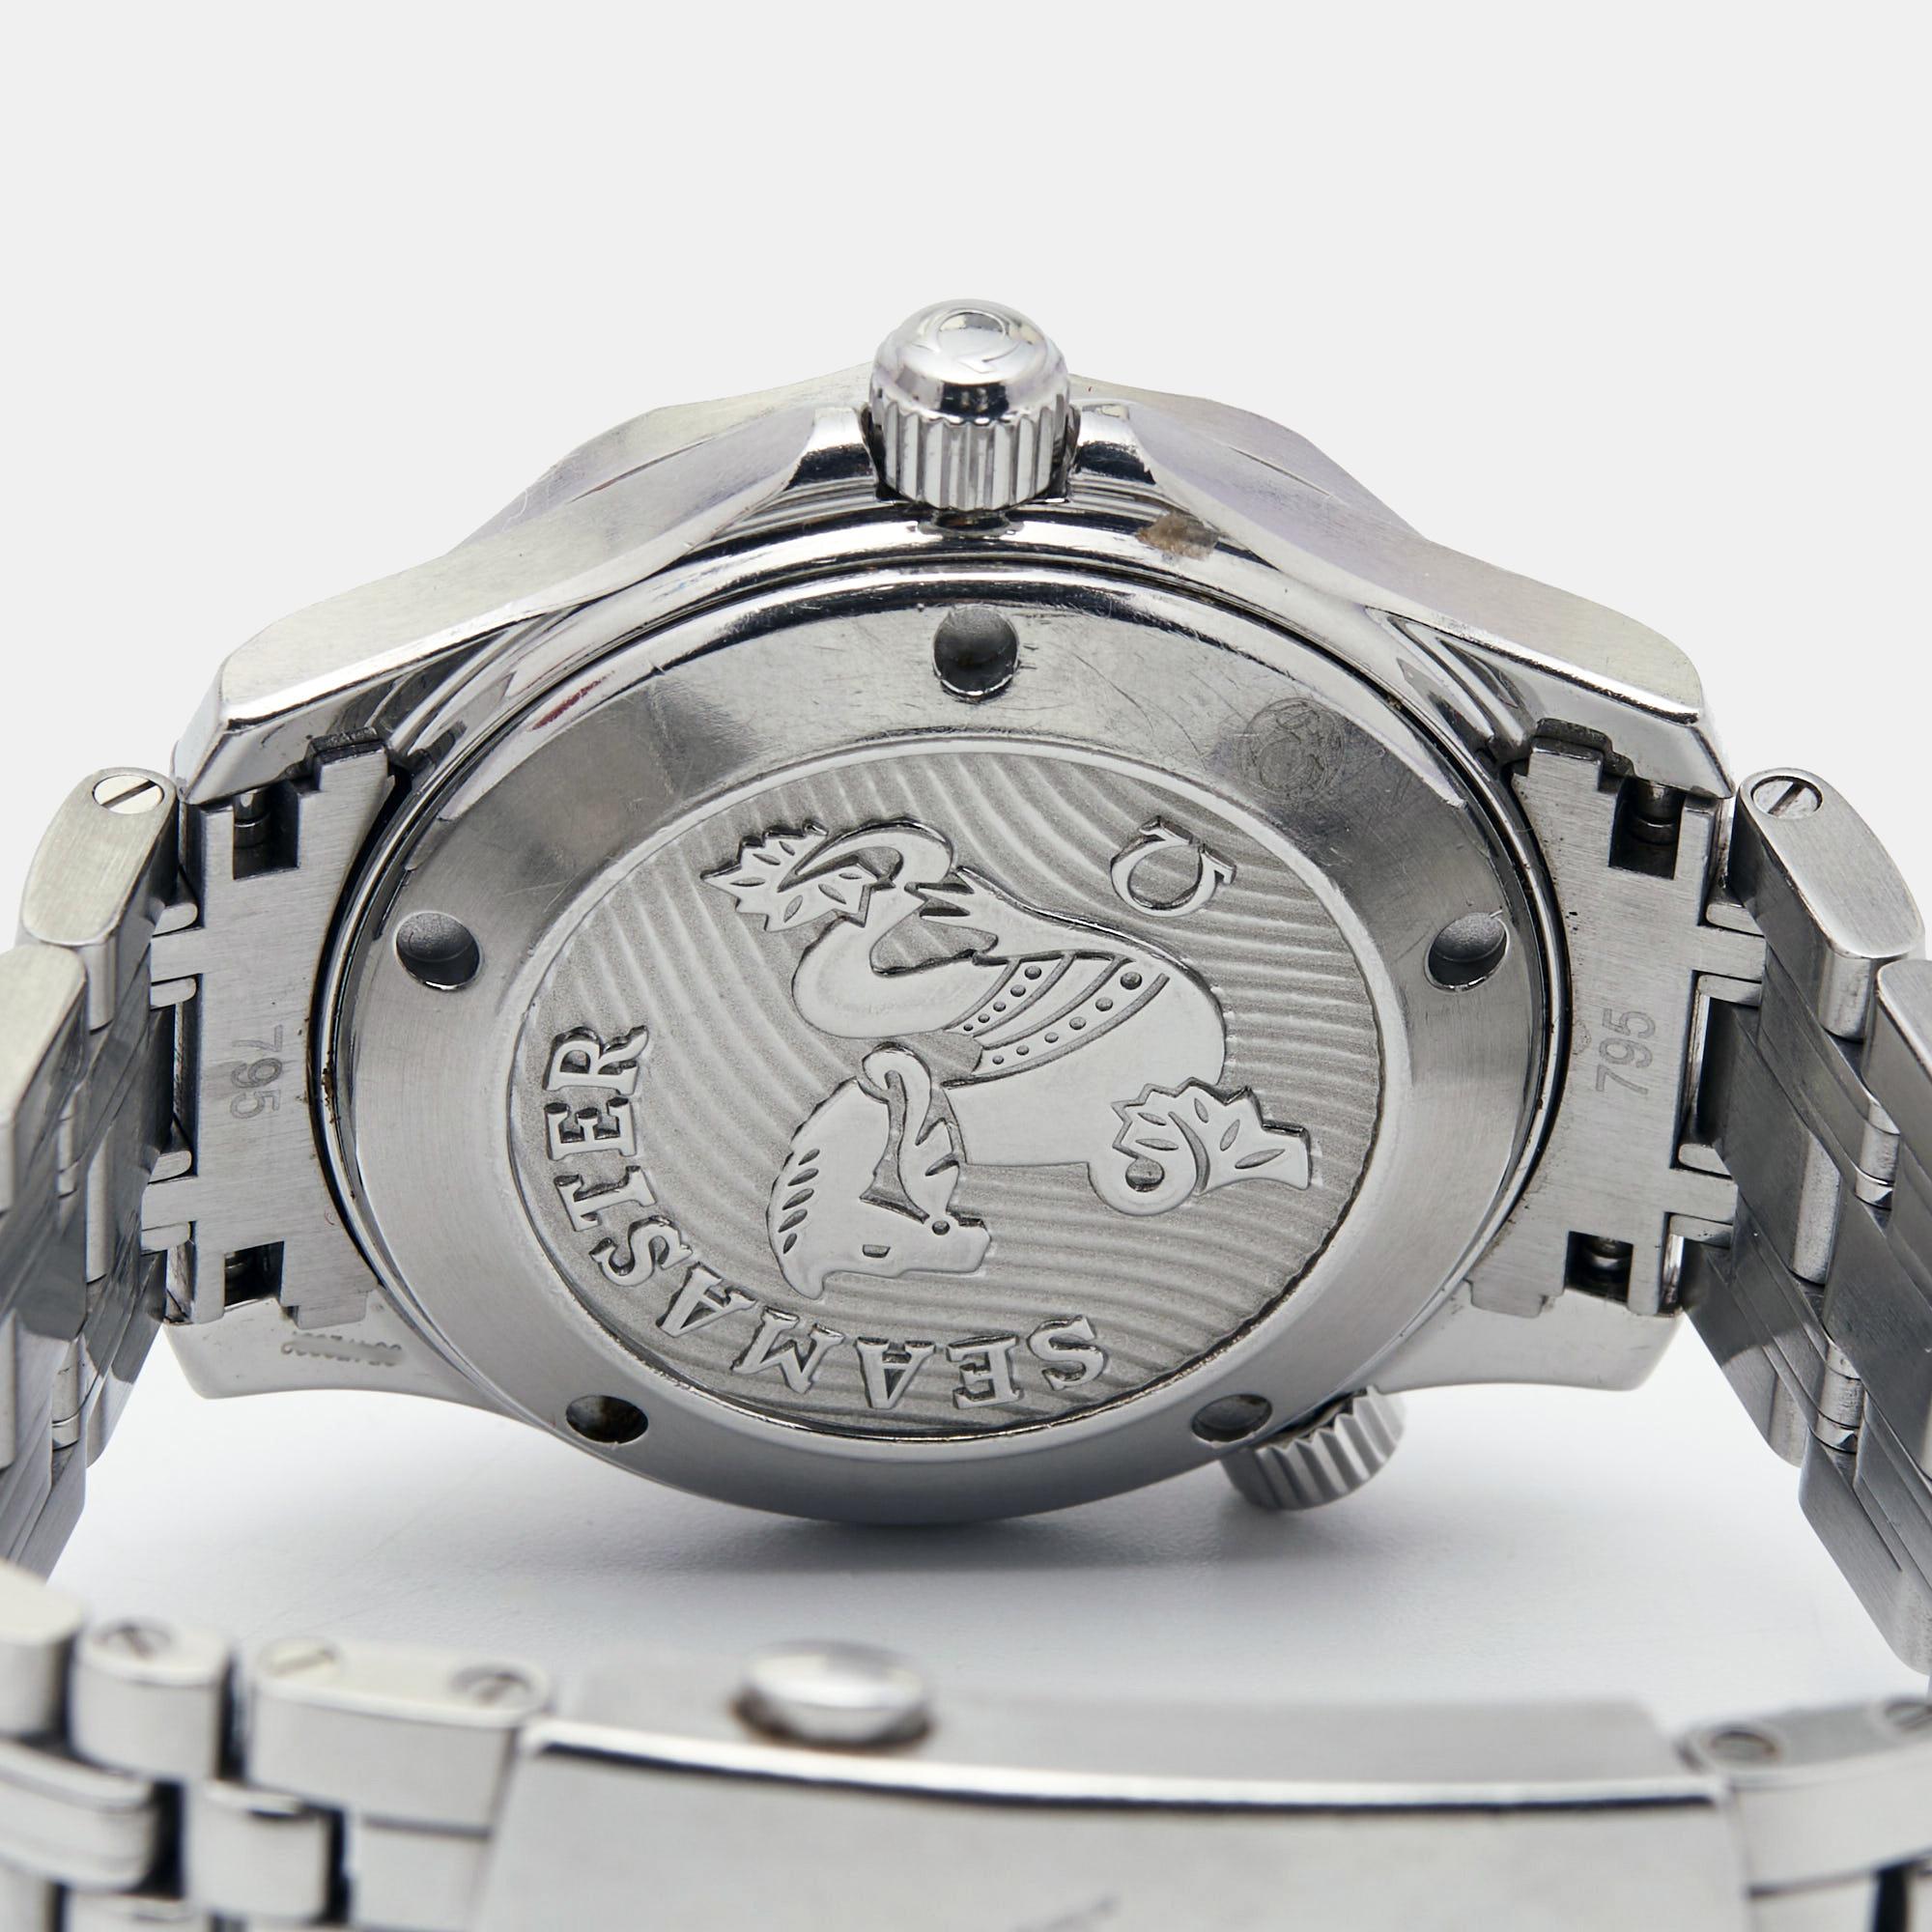 La montre-bracelet Omega Seamaster, dotée d'un boîtier raffiné de 36 mm, dégage un charme intemporel et une fonctionnalité robuste. Conçue dans un souci de précision et de durabilité, sa construction élégante en acier inoxydable émane d'un luxe